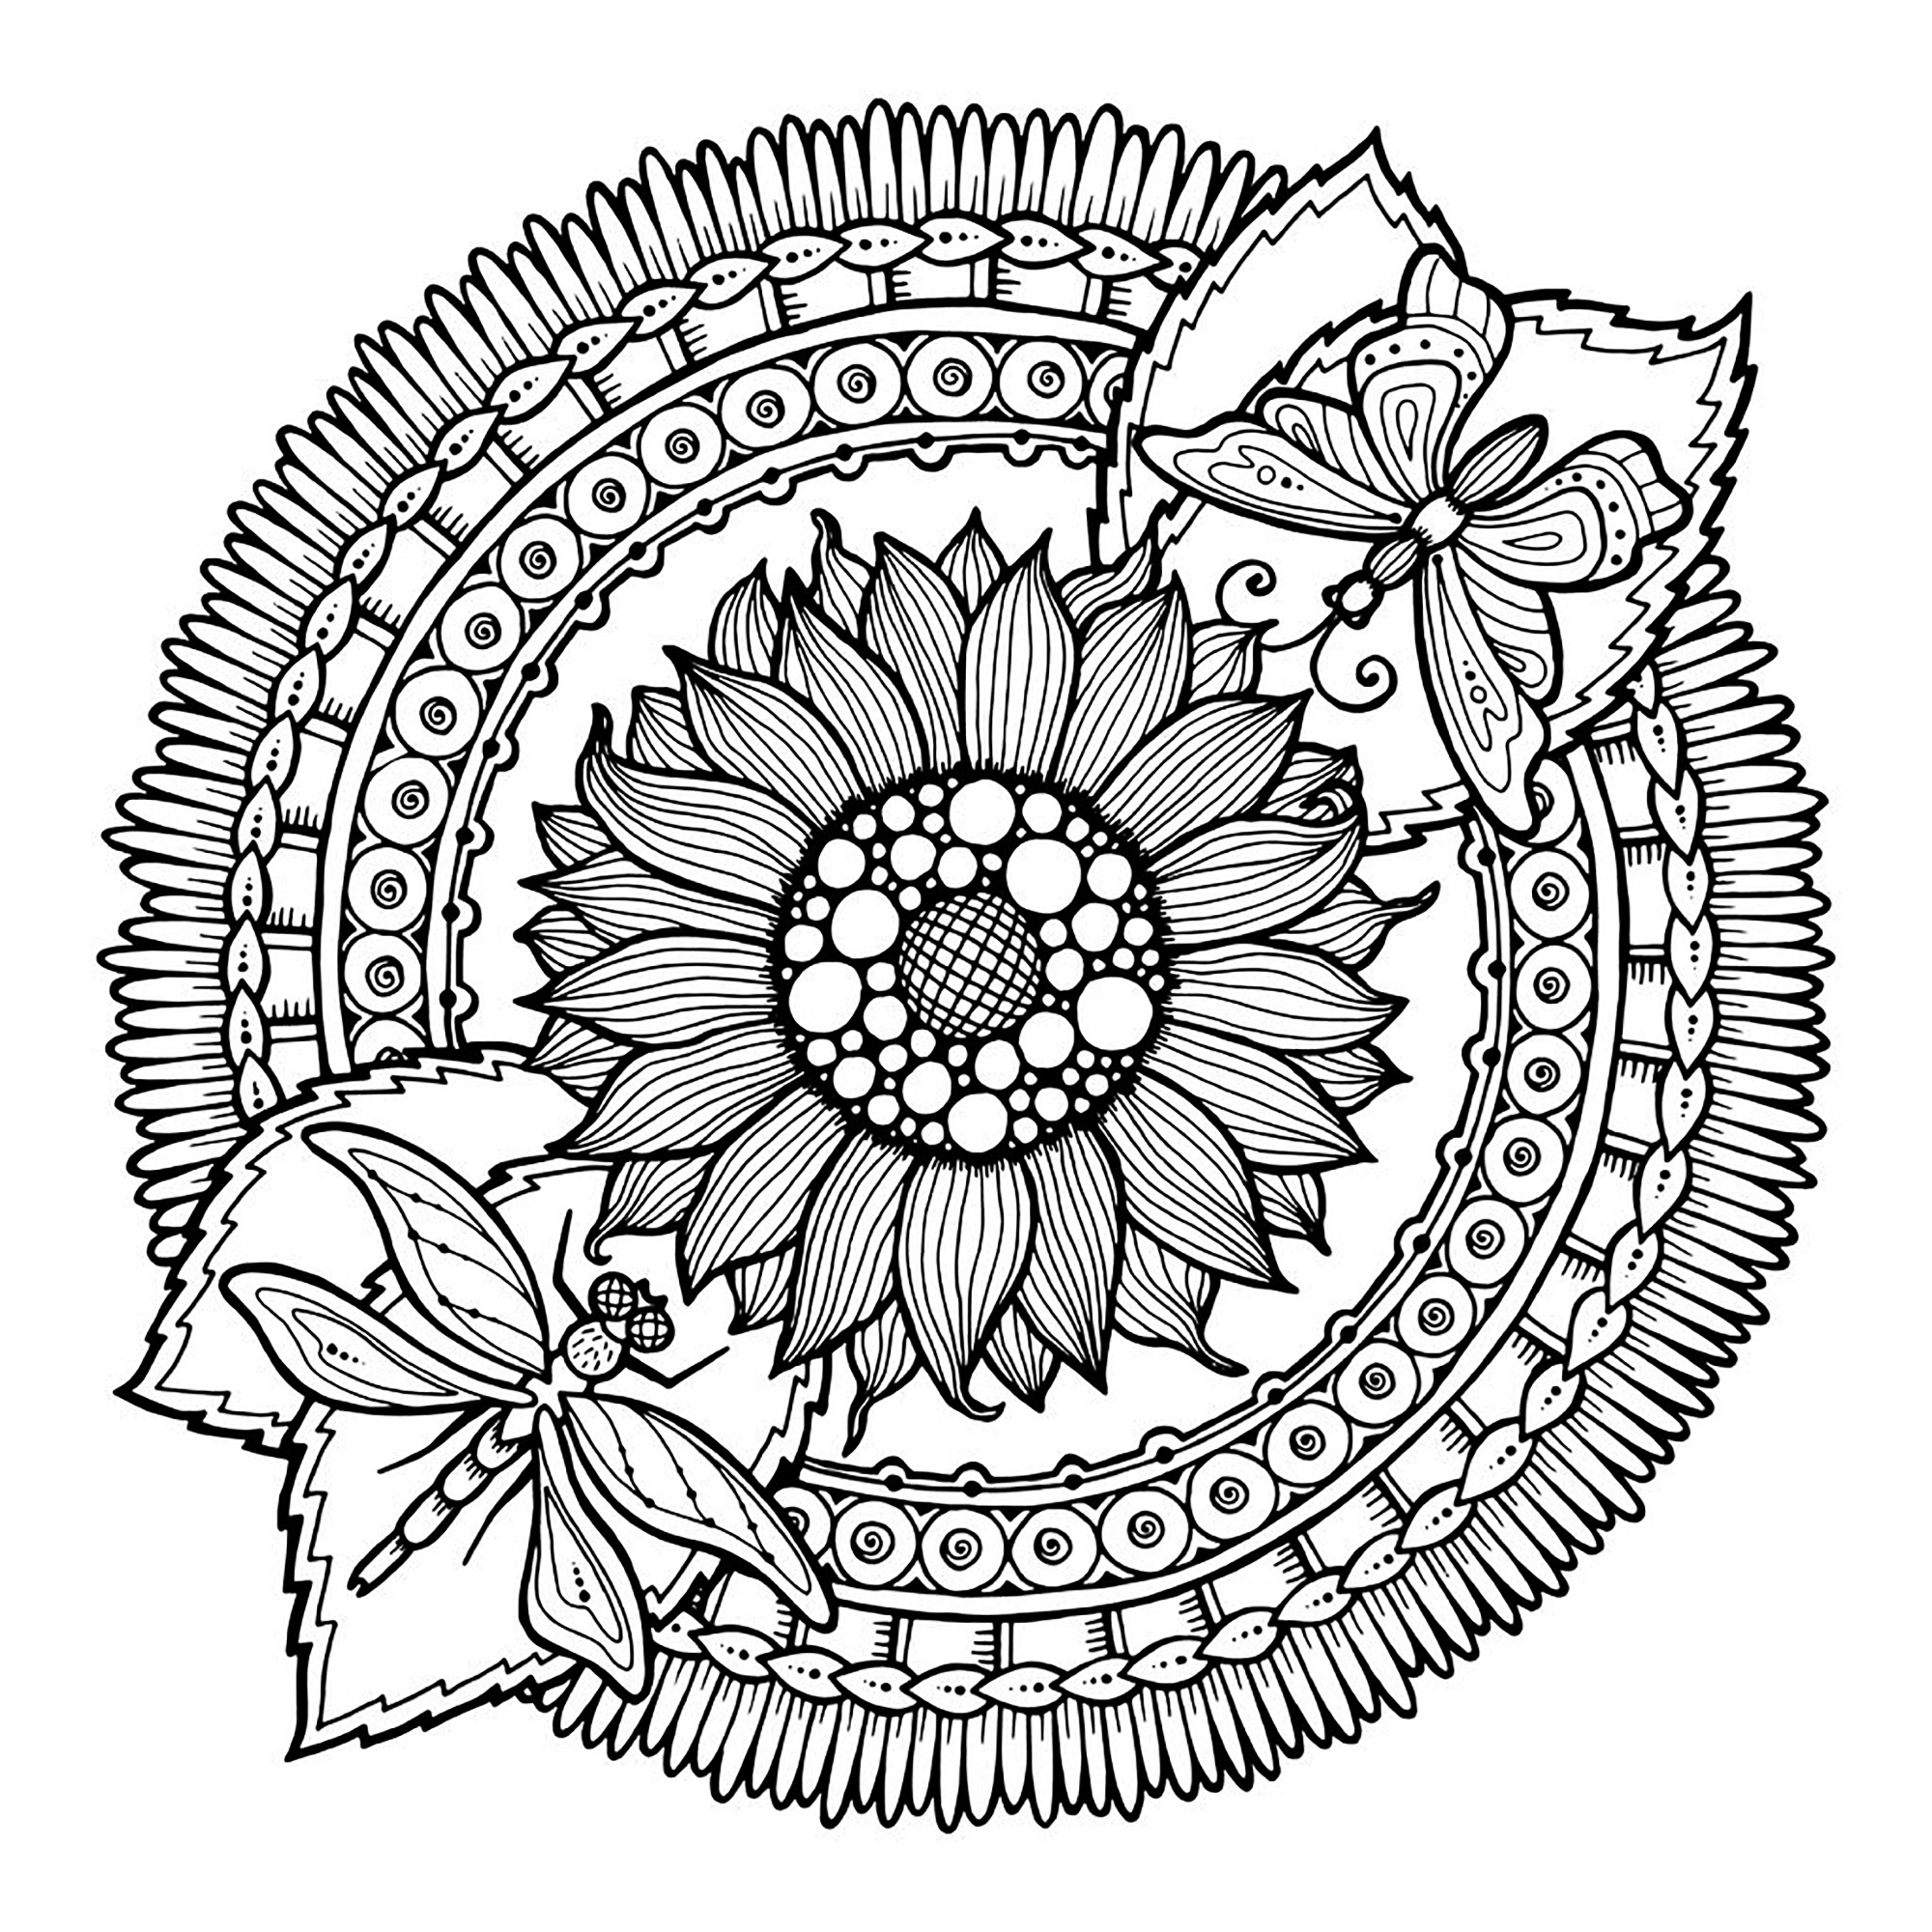 Desenhos simples para colorir de Mandalas, Artista : Julias Negireva   Fonte : 123rf